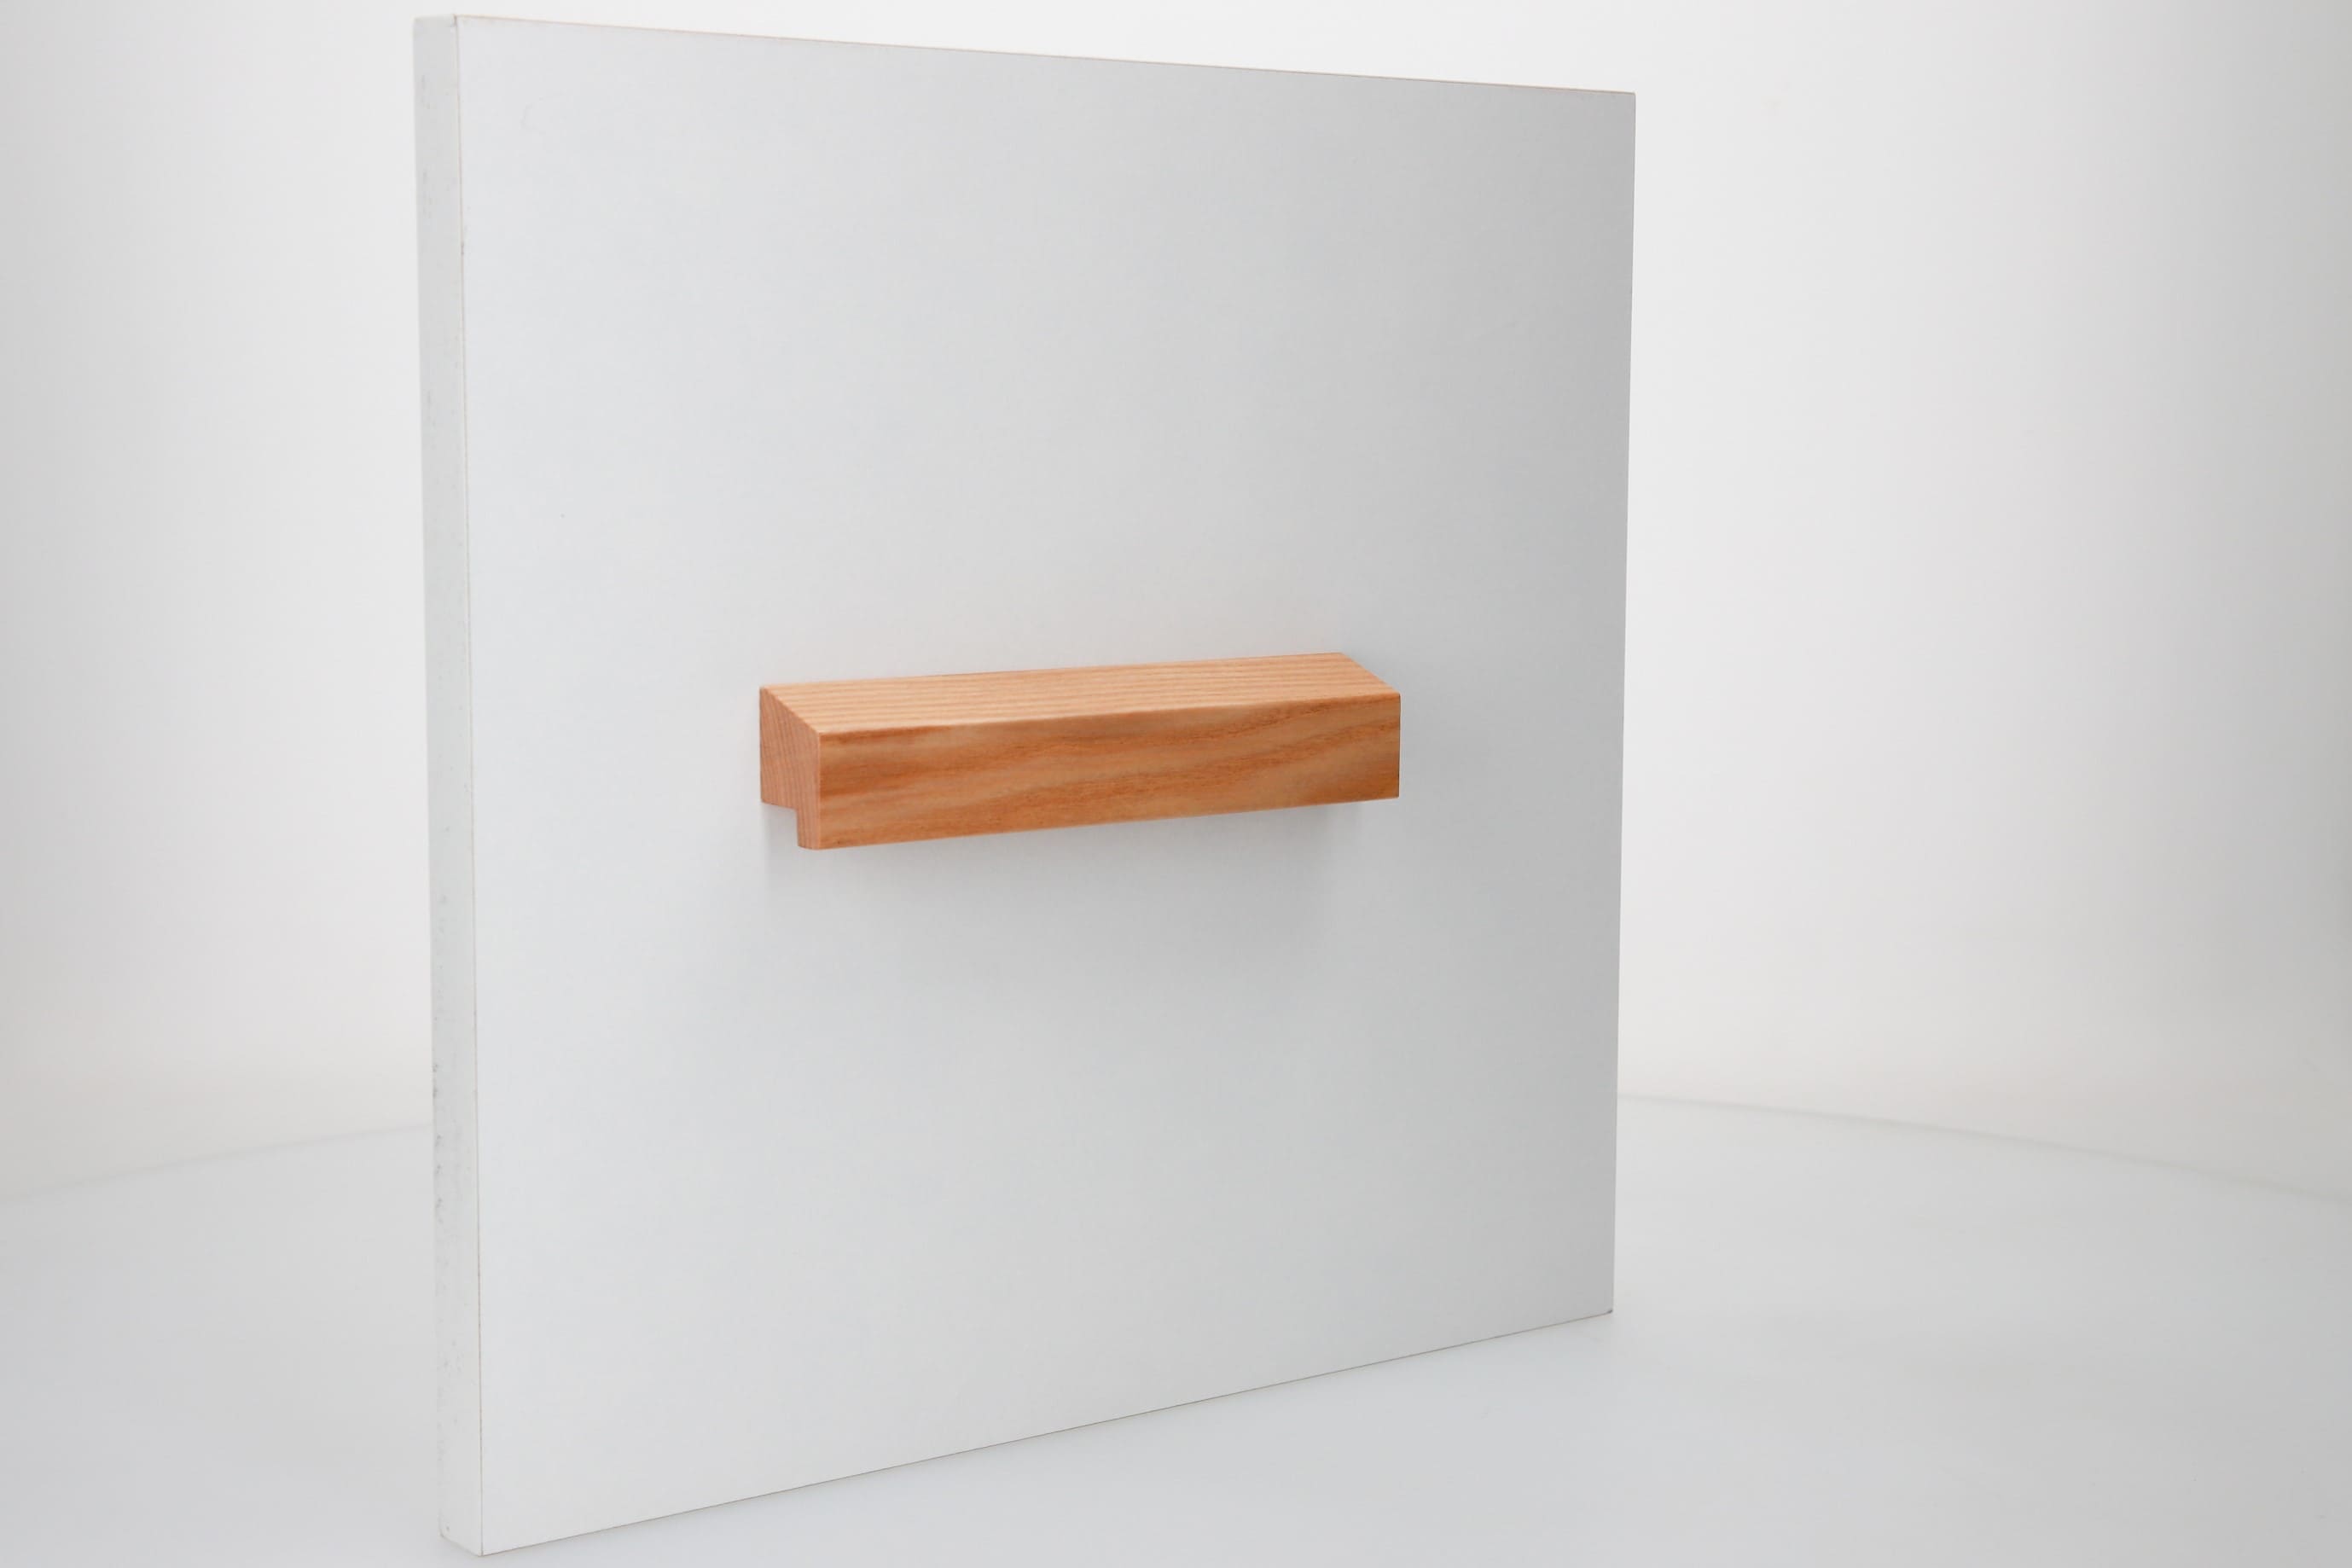 Horizontal mounted on cupboard wooden handle